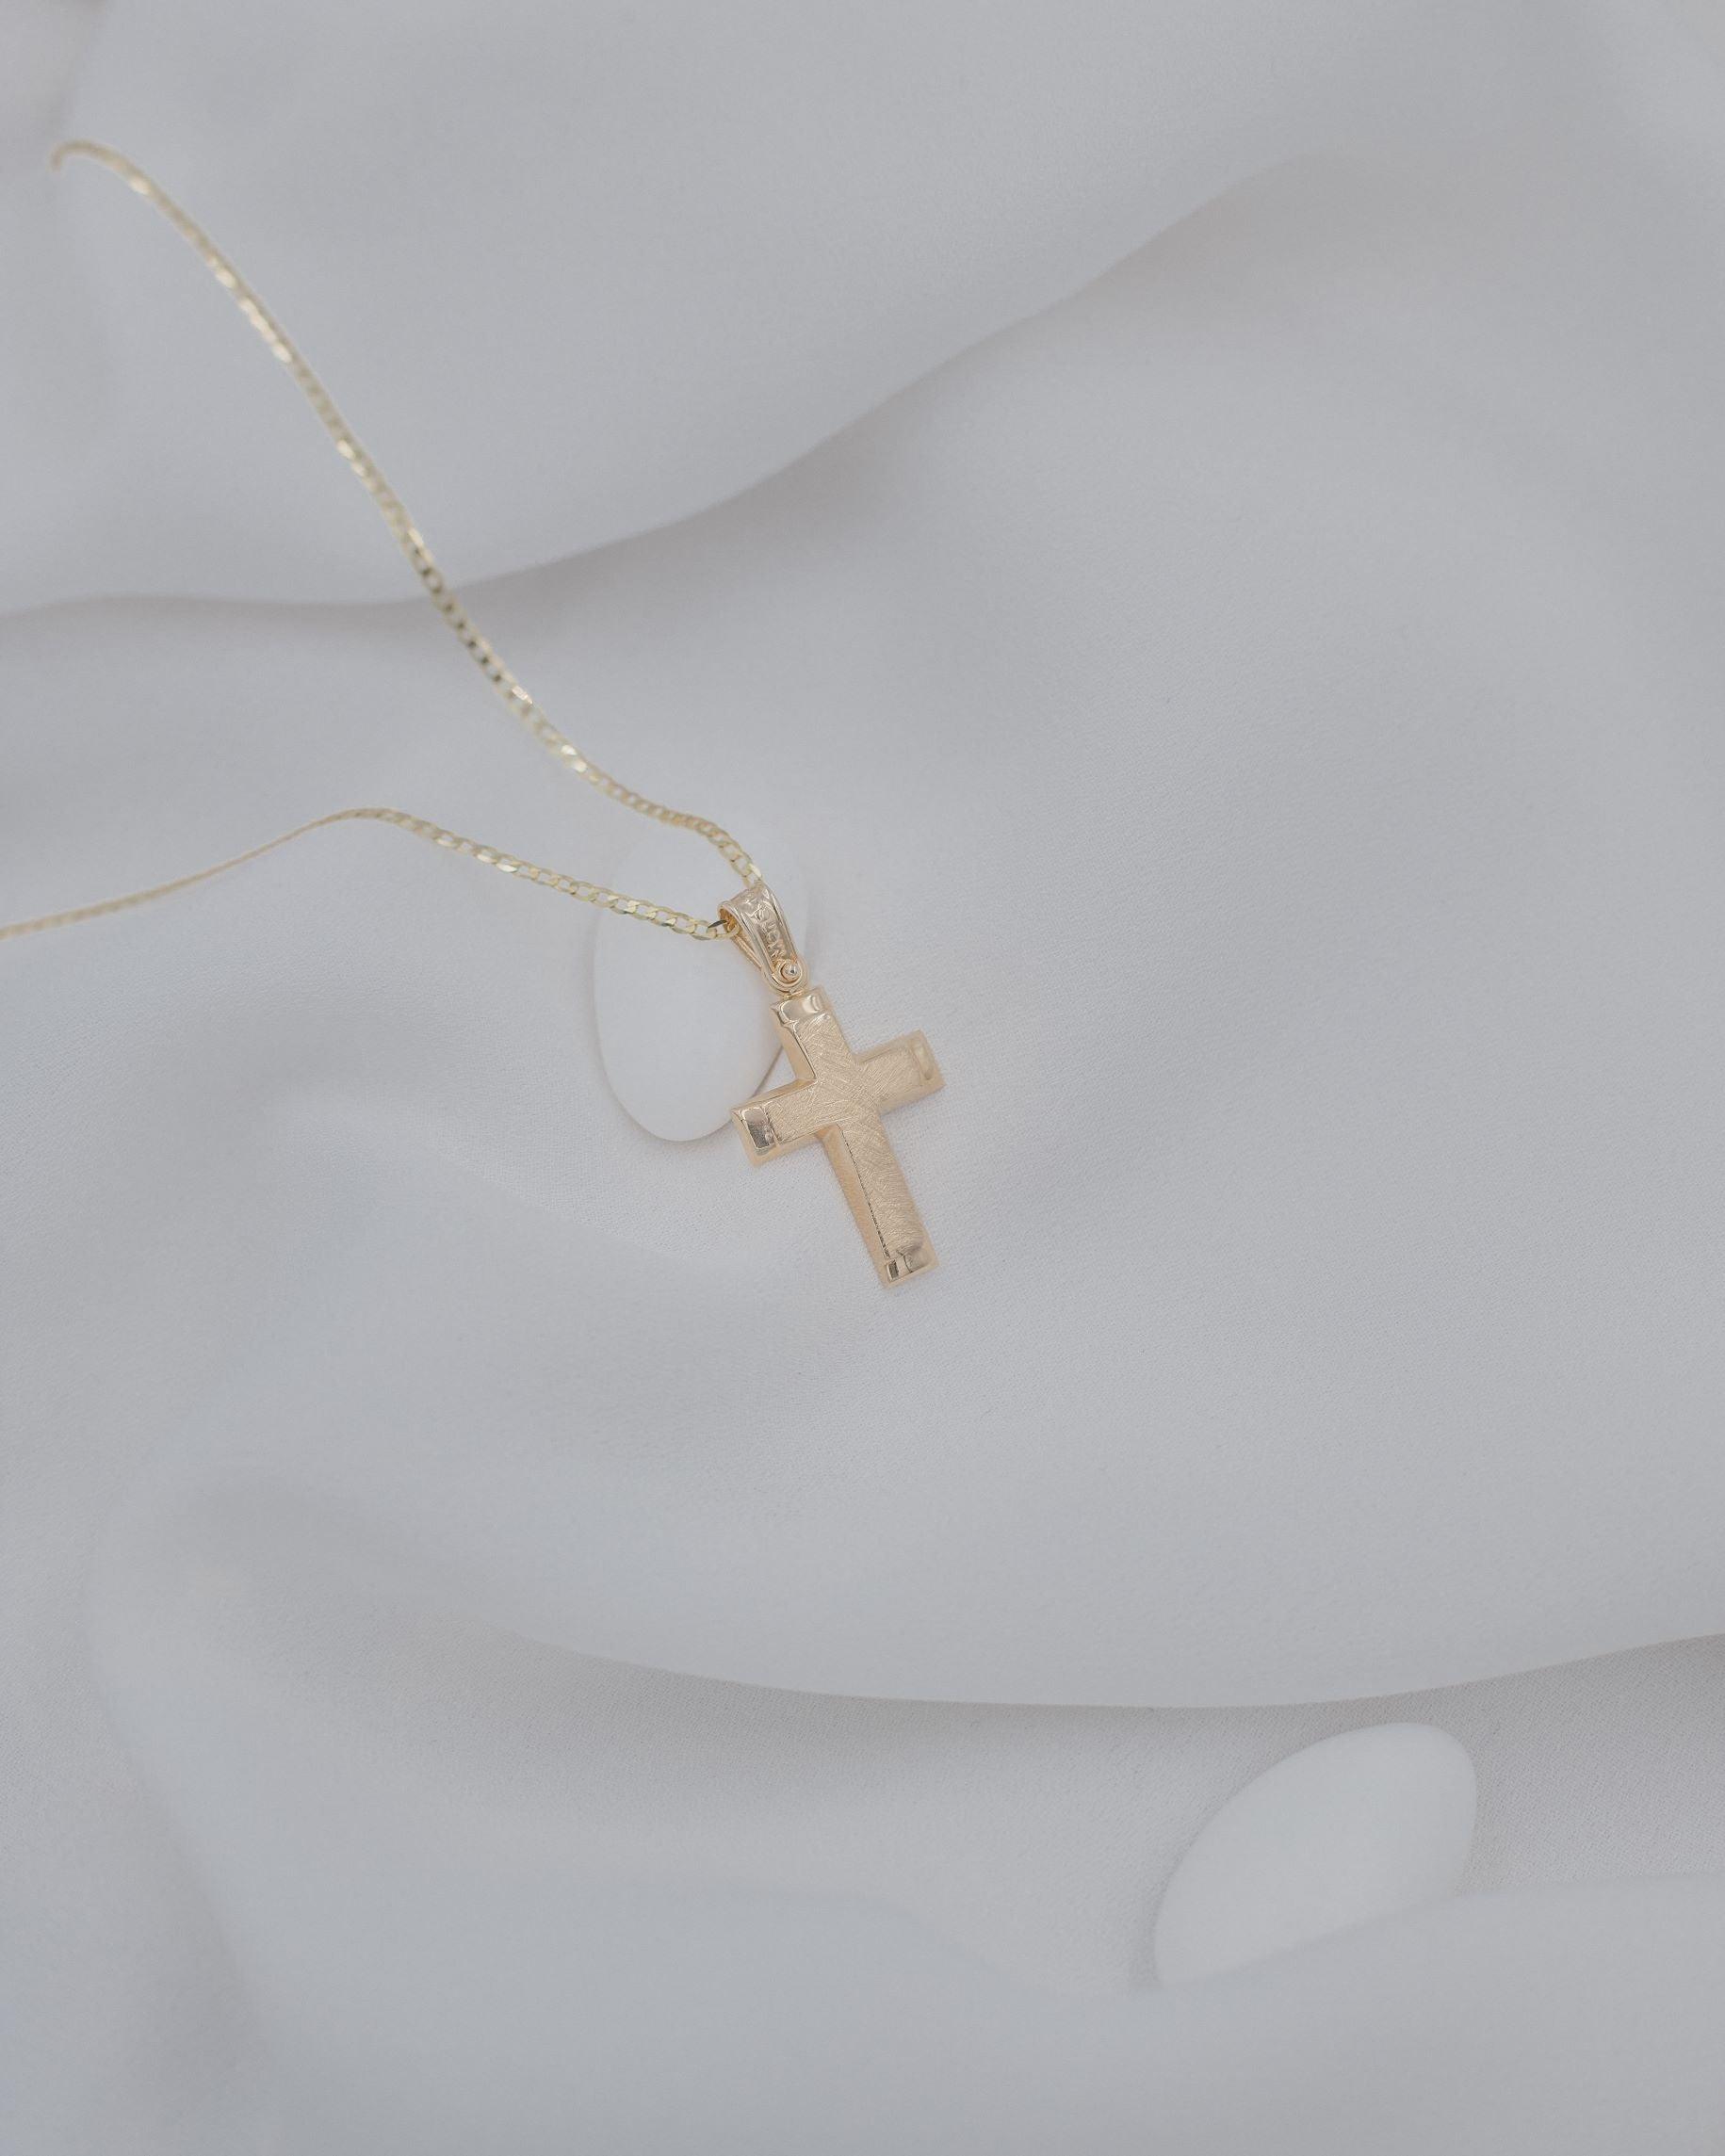 Γυναικείος βαπτιστικός σταυρός από χρυσό Κ14 με σαγρέ επιφάνεια